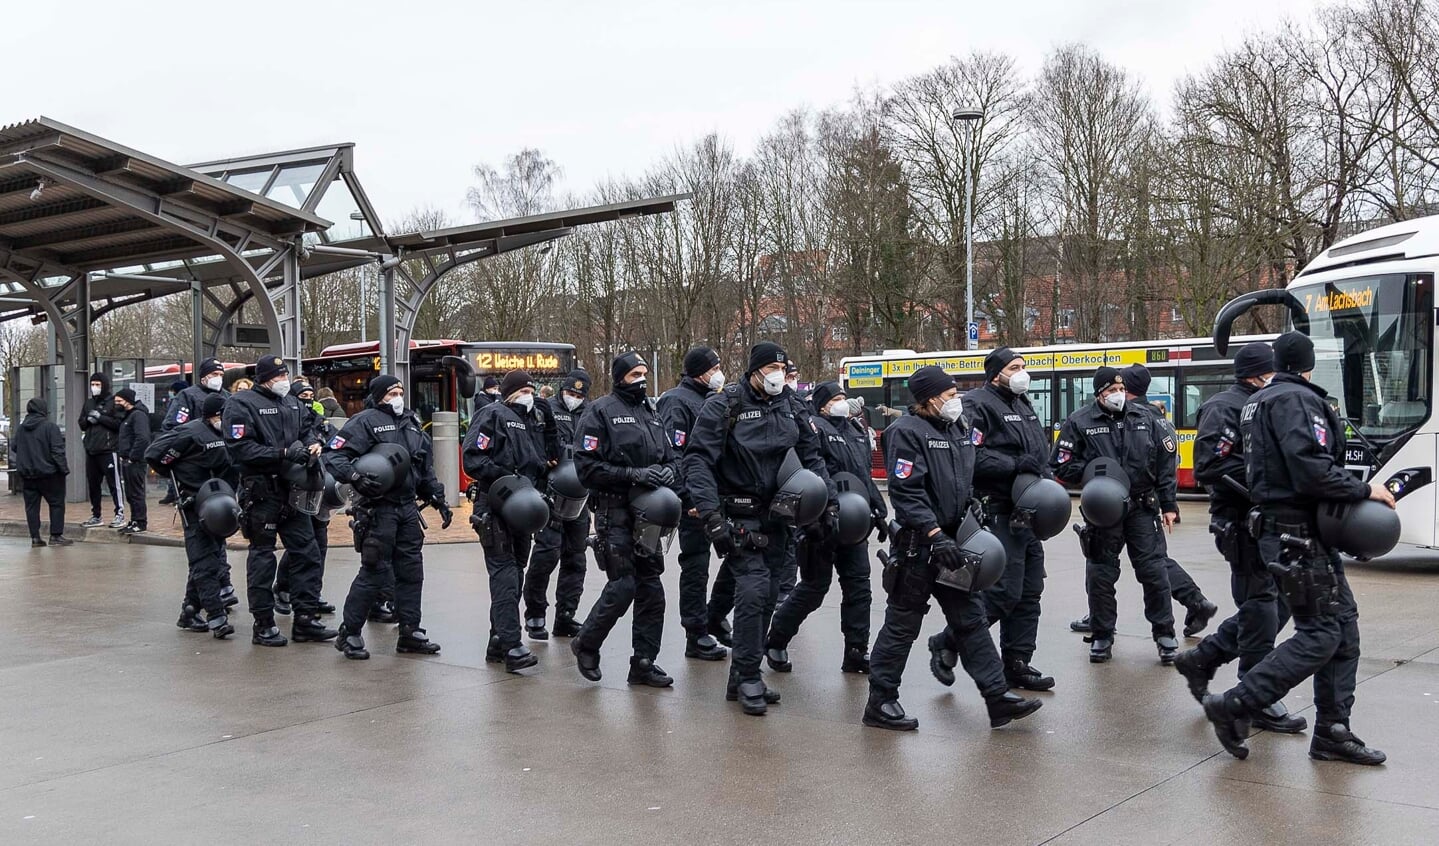 Politiet har været talstærkt til stede de sidste mange lørdage under de uanmeldte demonstrationer. Denne lørdag varsler de igen om demonstrationer, der kan påvirke trafikken kraftigt i Flensborg. Arkivfoto: